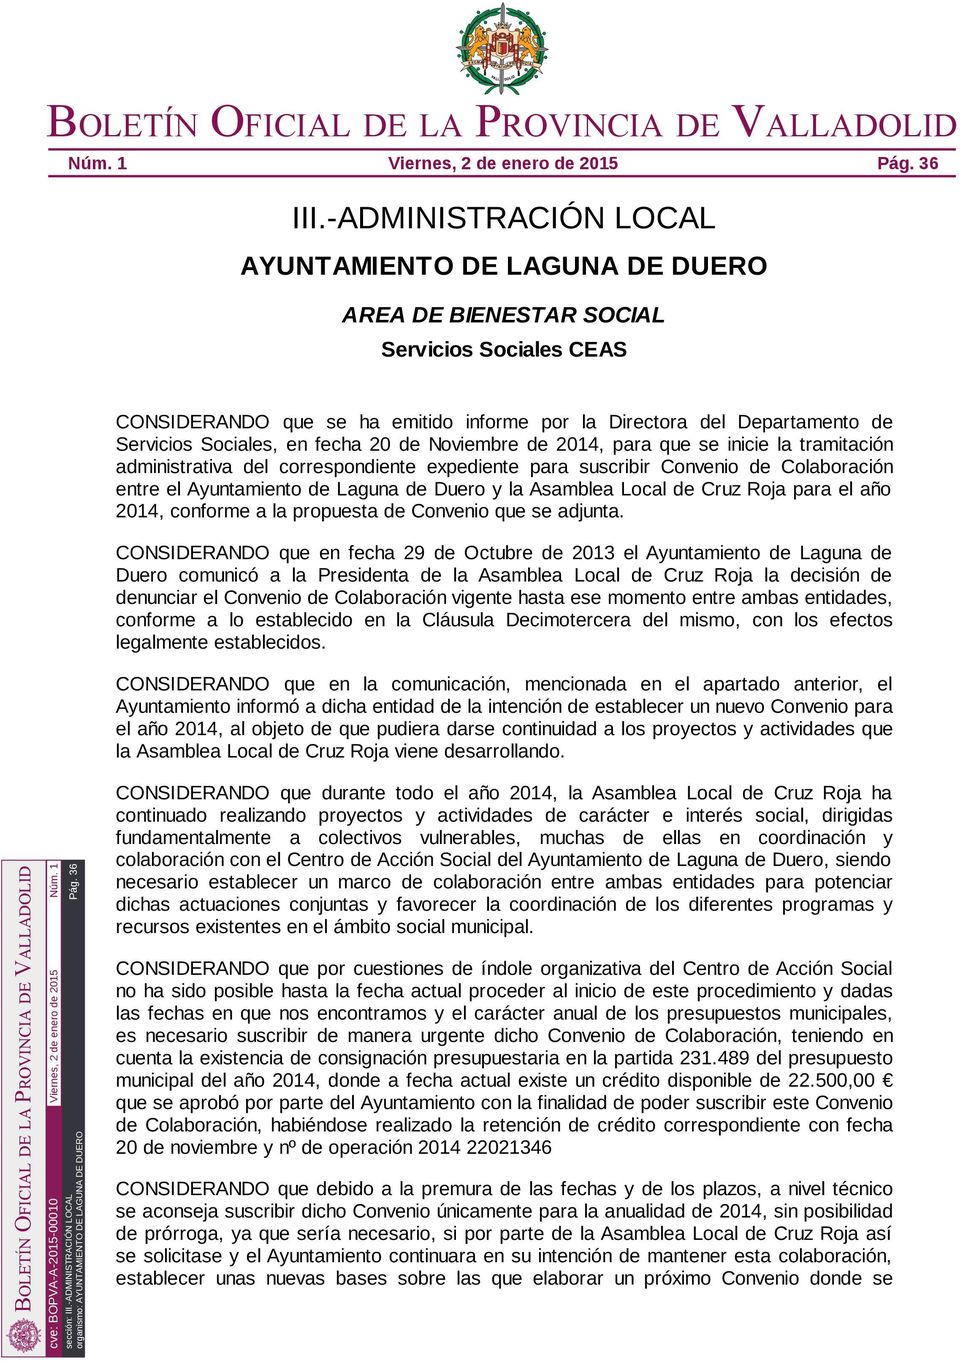 en fecha 20 de Noviembre de 2014, para que se inicie la tramitación administrativa del correspondiente expediente para suscribir Convenio de Colaboración entre el Ayuntamiento de Laguna de Duero y la